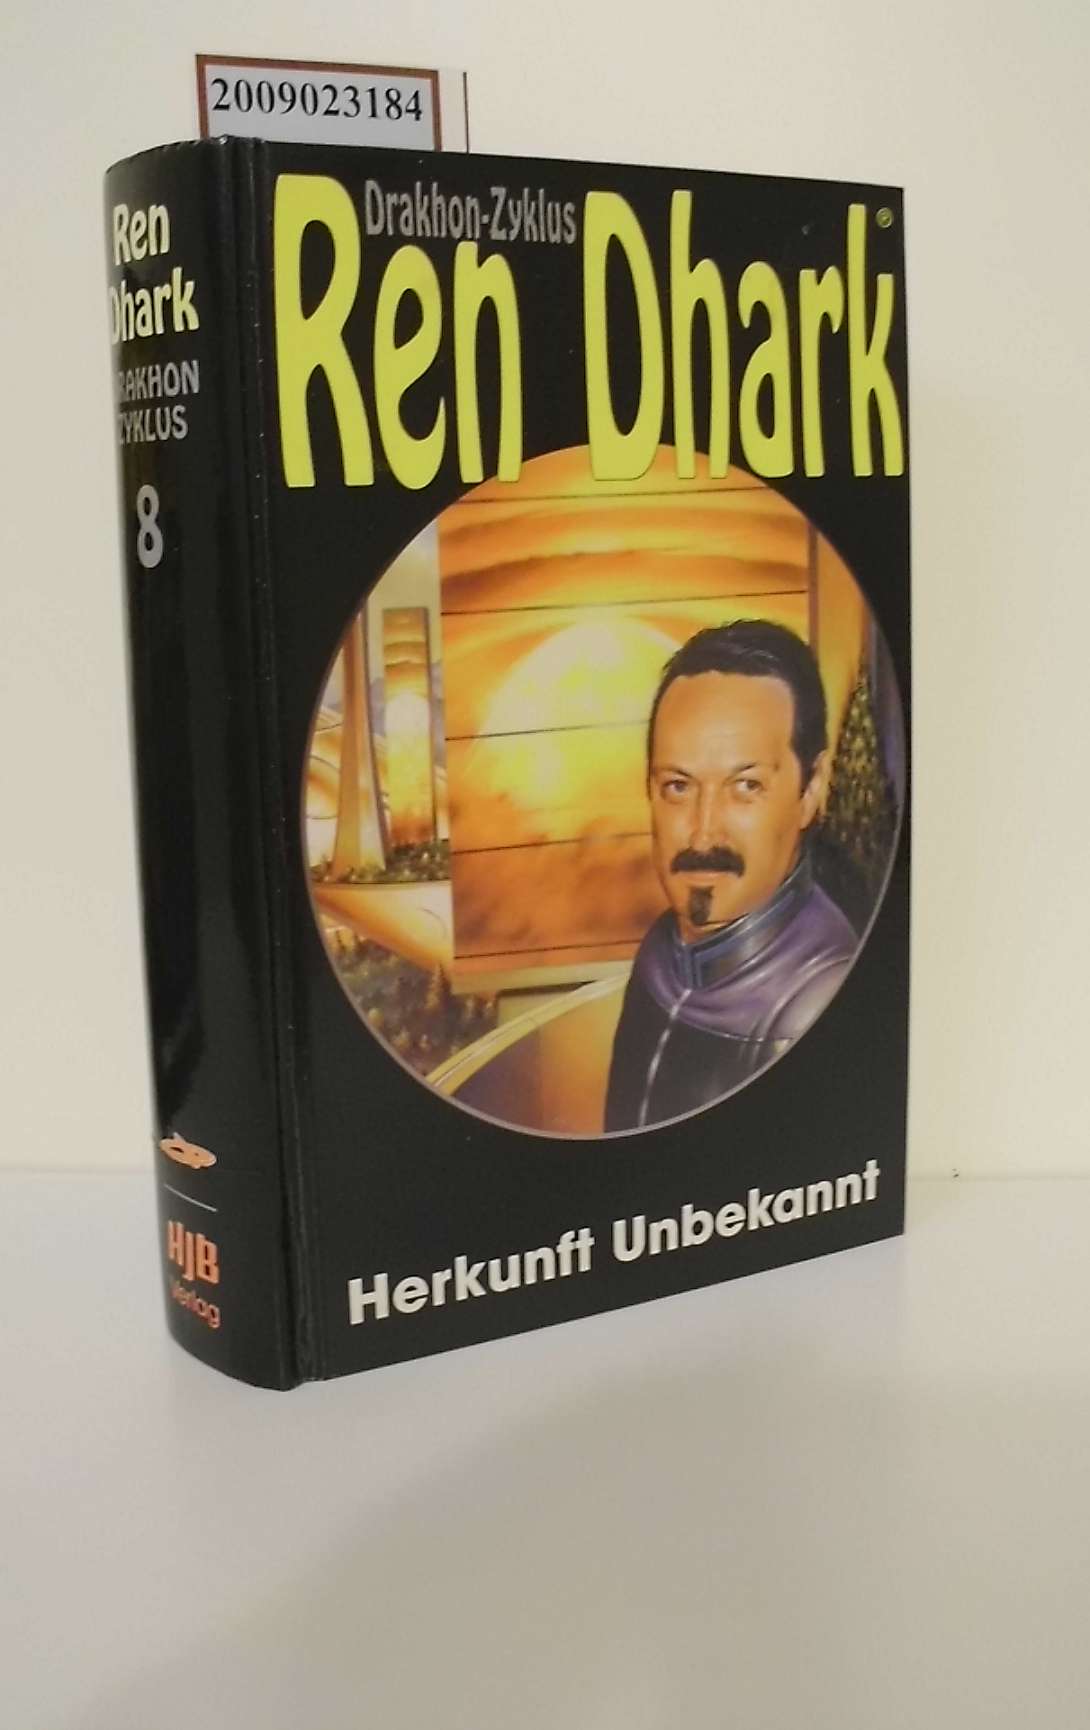 Ren Dhark Teil: Der Drakhon-Zyklus / Bd. 8., Herkunft unbekannt / hrsg. von Hajo F. Breuer - Breuer, Hajo, K Giesa Werner Conrad Shepherd u. a.